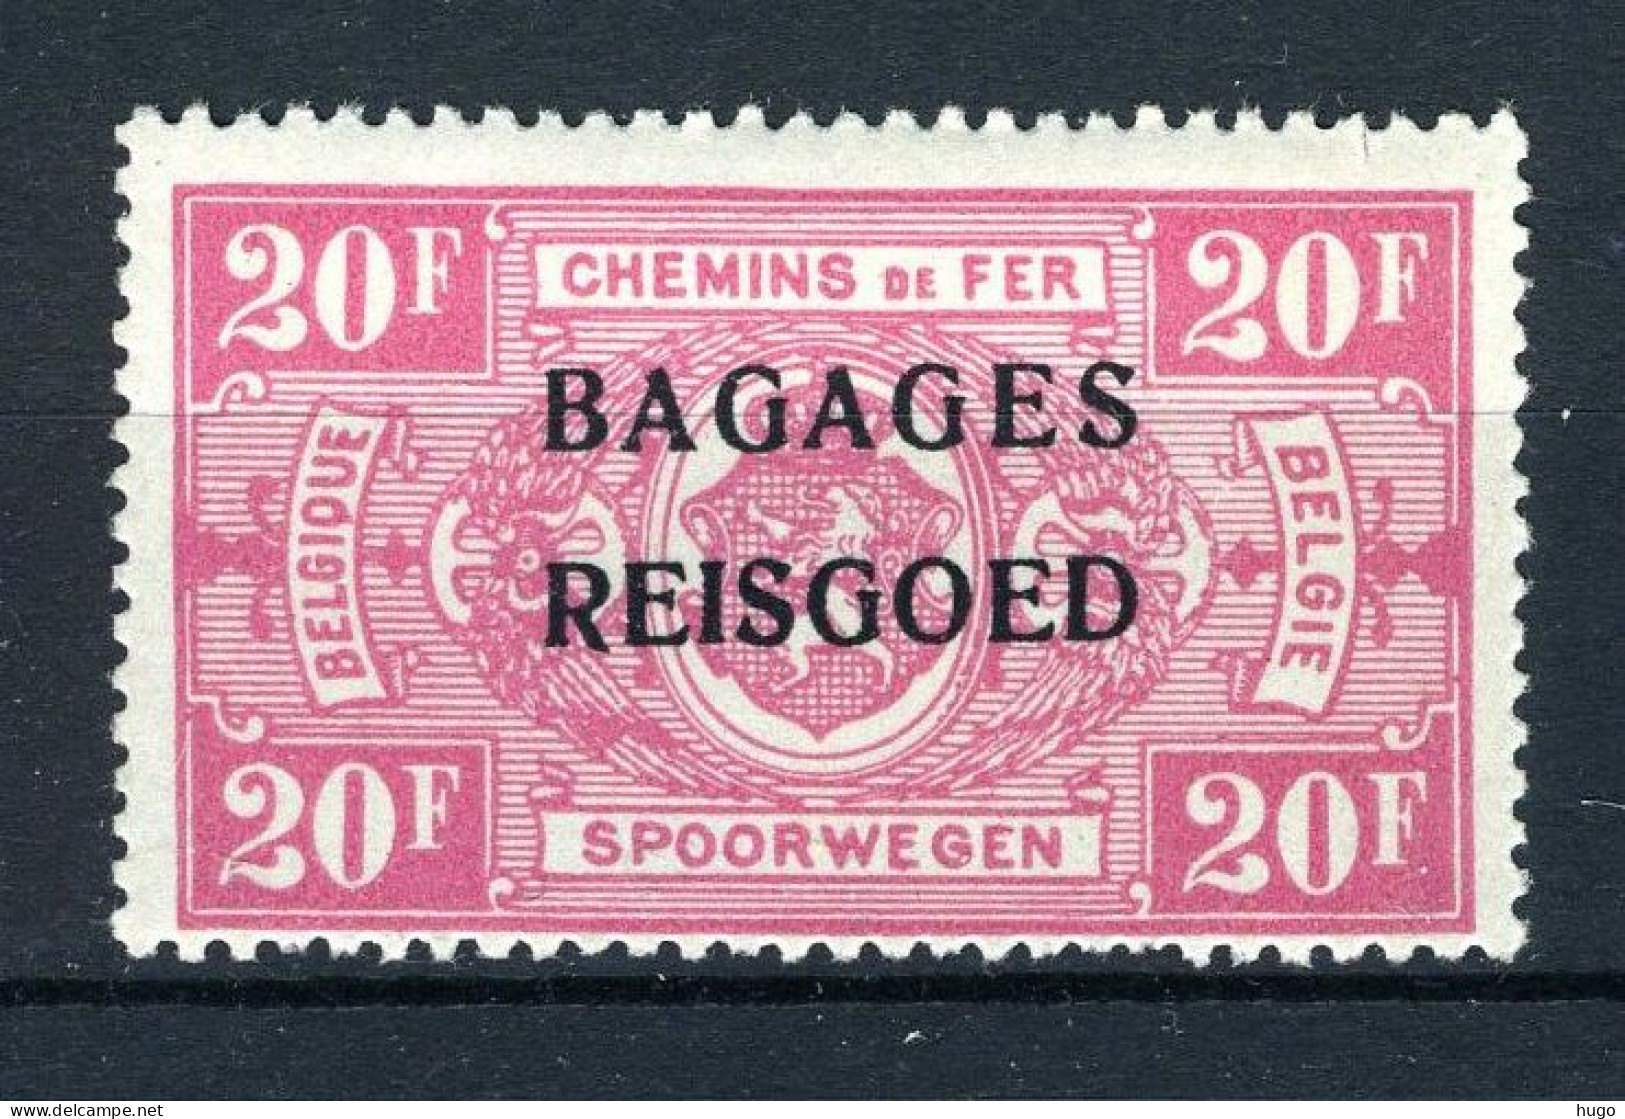 BA20 MNH** 1935 - Spoorwegzegels Met Opdruk "BAGAGES - REISGOED" - Sot  - Equipaje [BA]